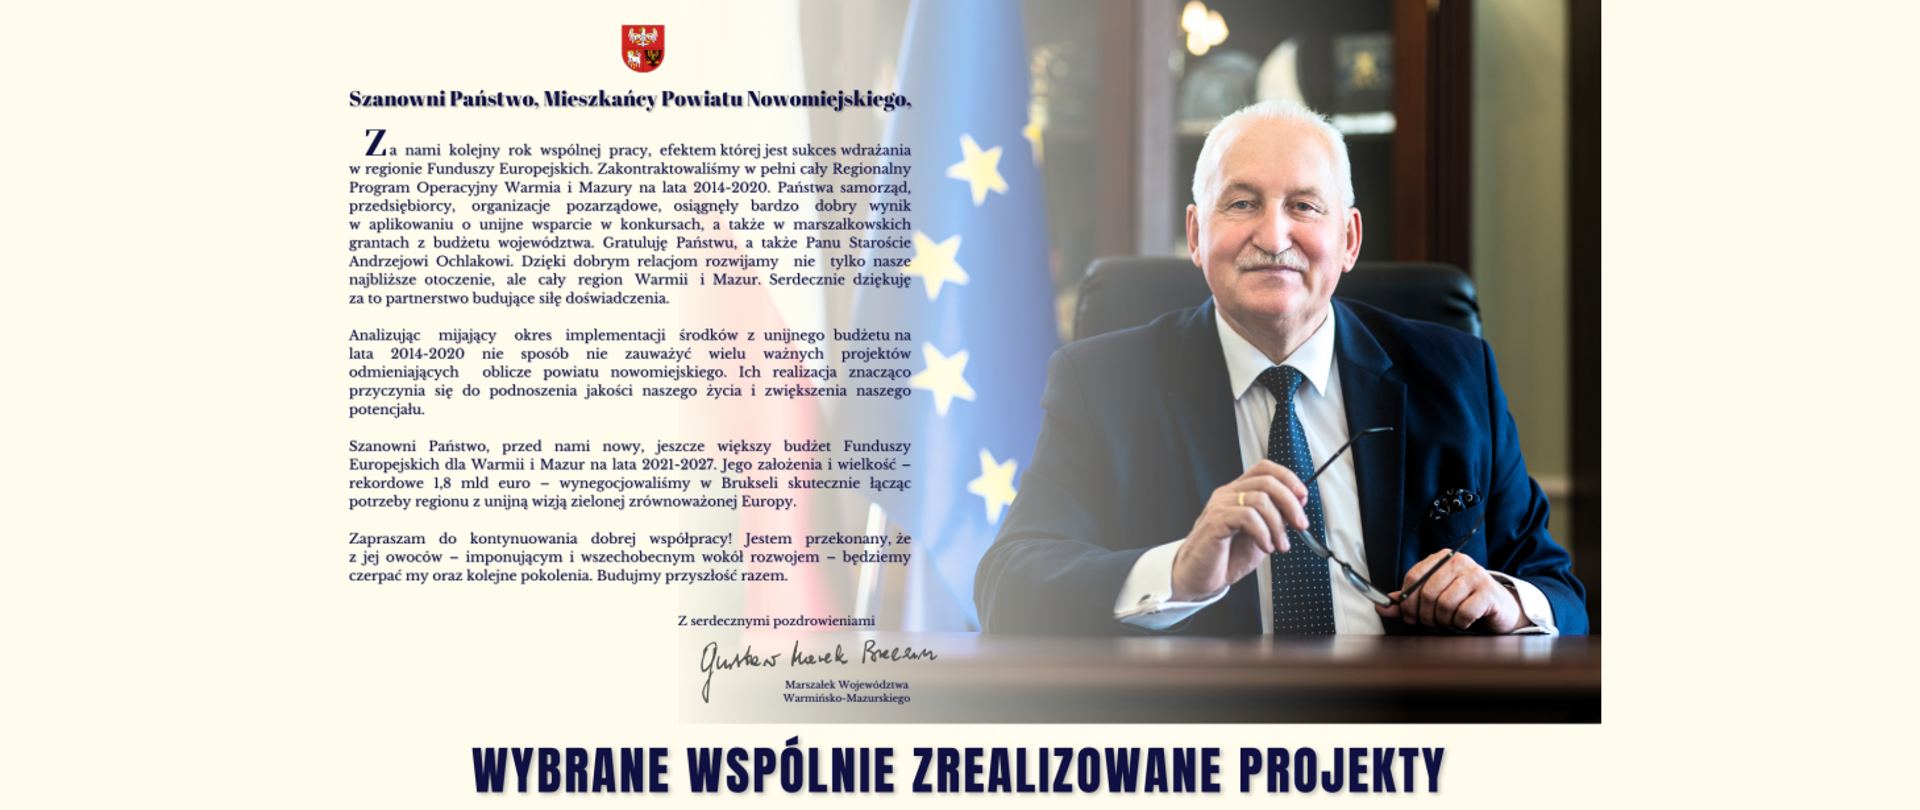 Wybrane wspólnie zrealizowane projekty z samorządem województwa warmińsko-mazurskiego